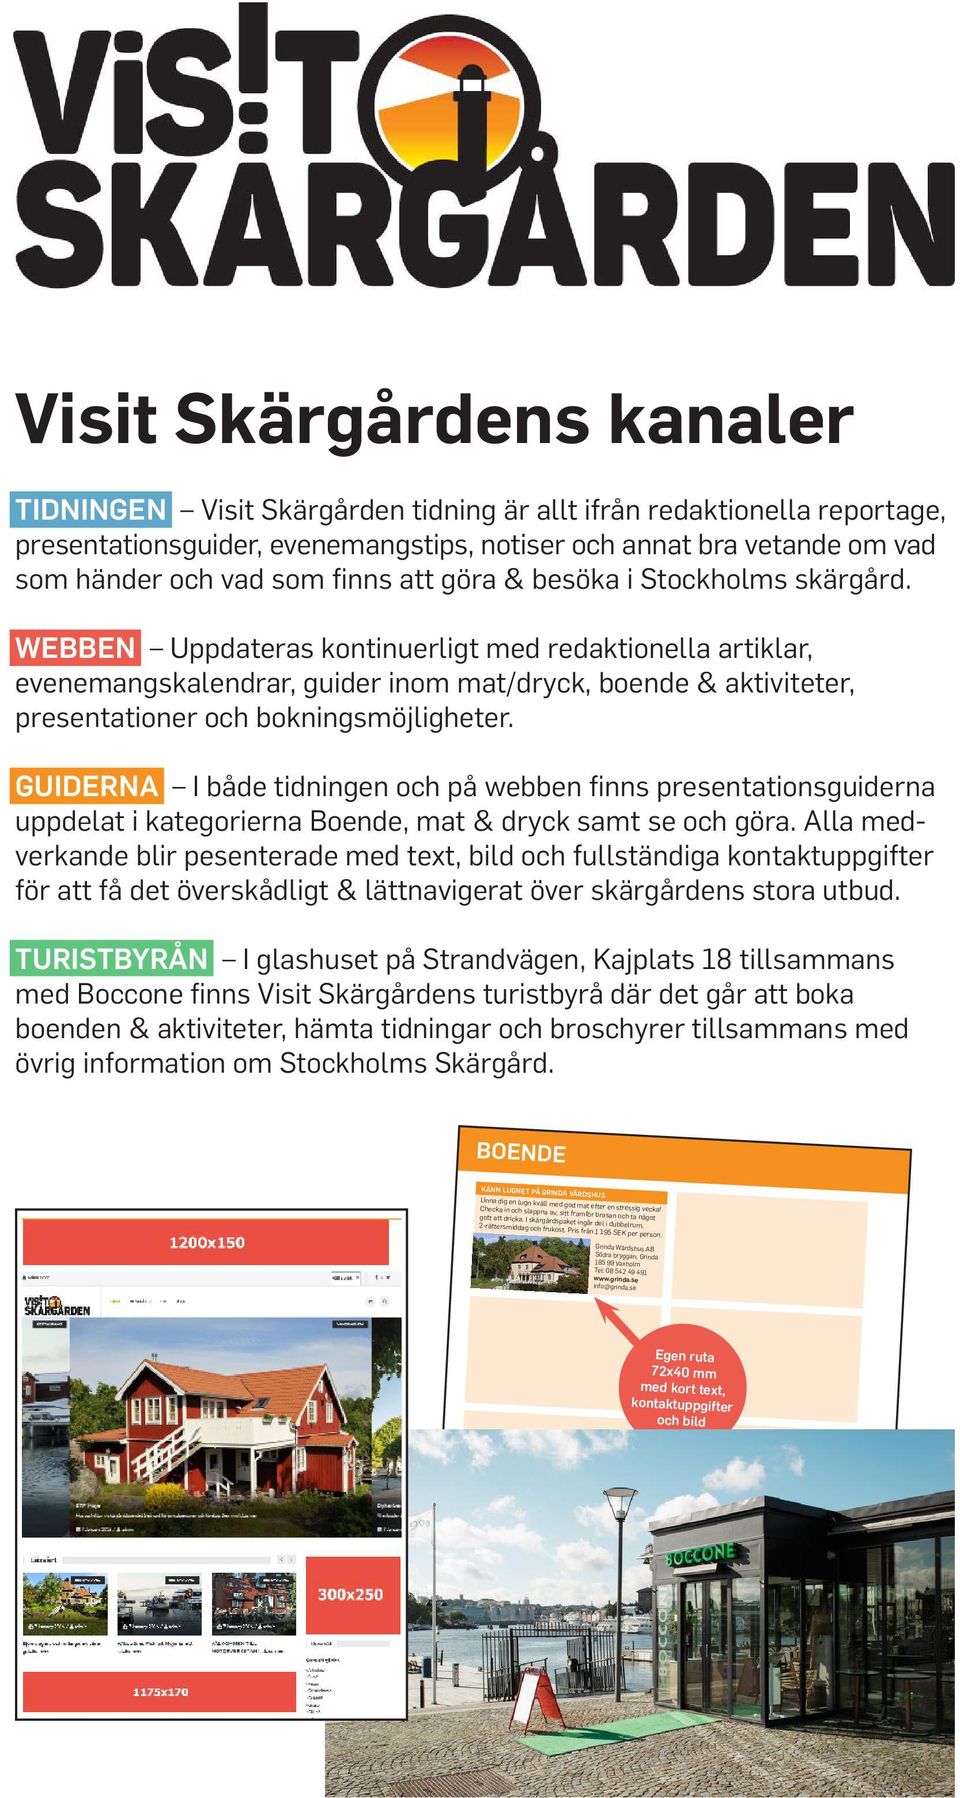 Visit Skärgårdens kanaler TIDNINGEN Visit Skärgården tidning är allt ifrån redaktionella reportage, presentationsguider, evenemangstips, notiser och annat bra vetande om vad som händer och vad som